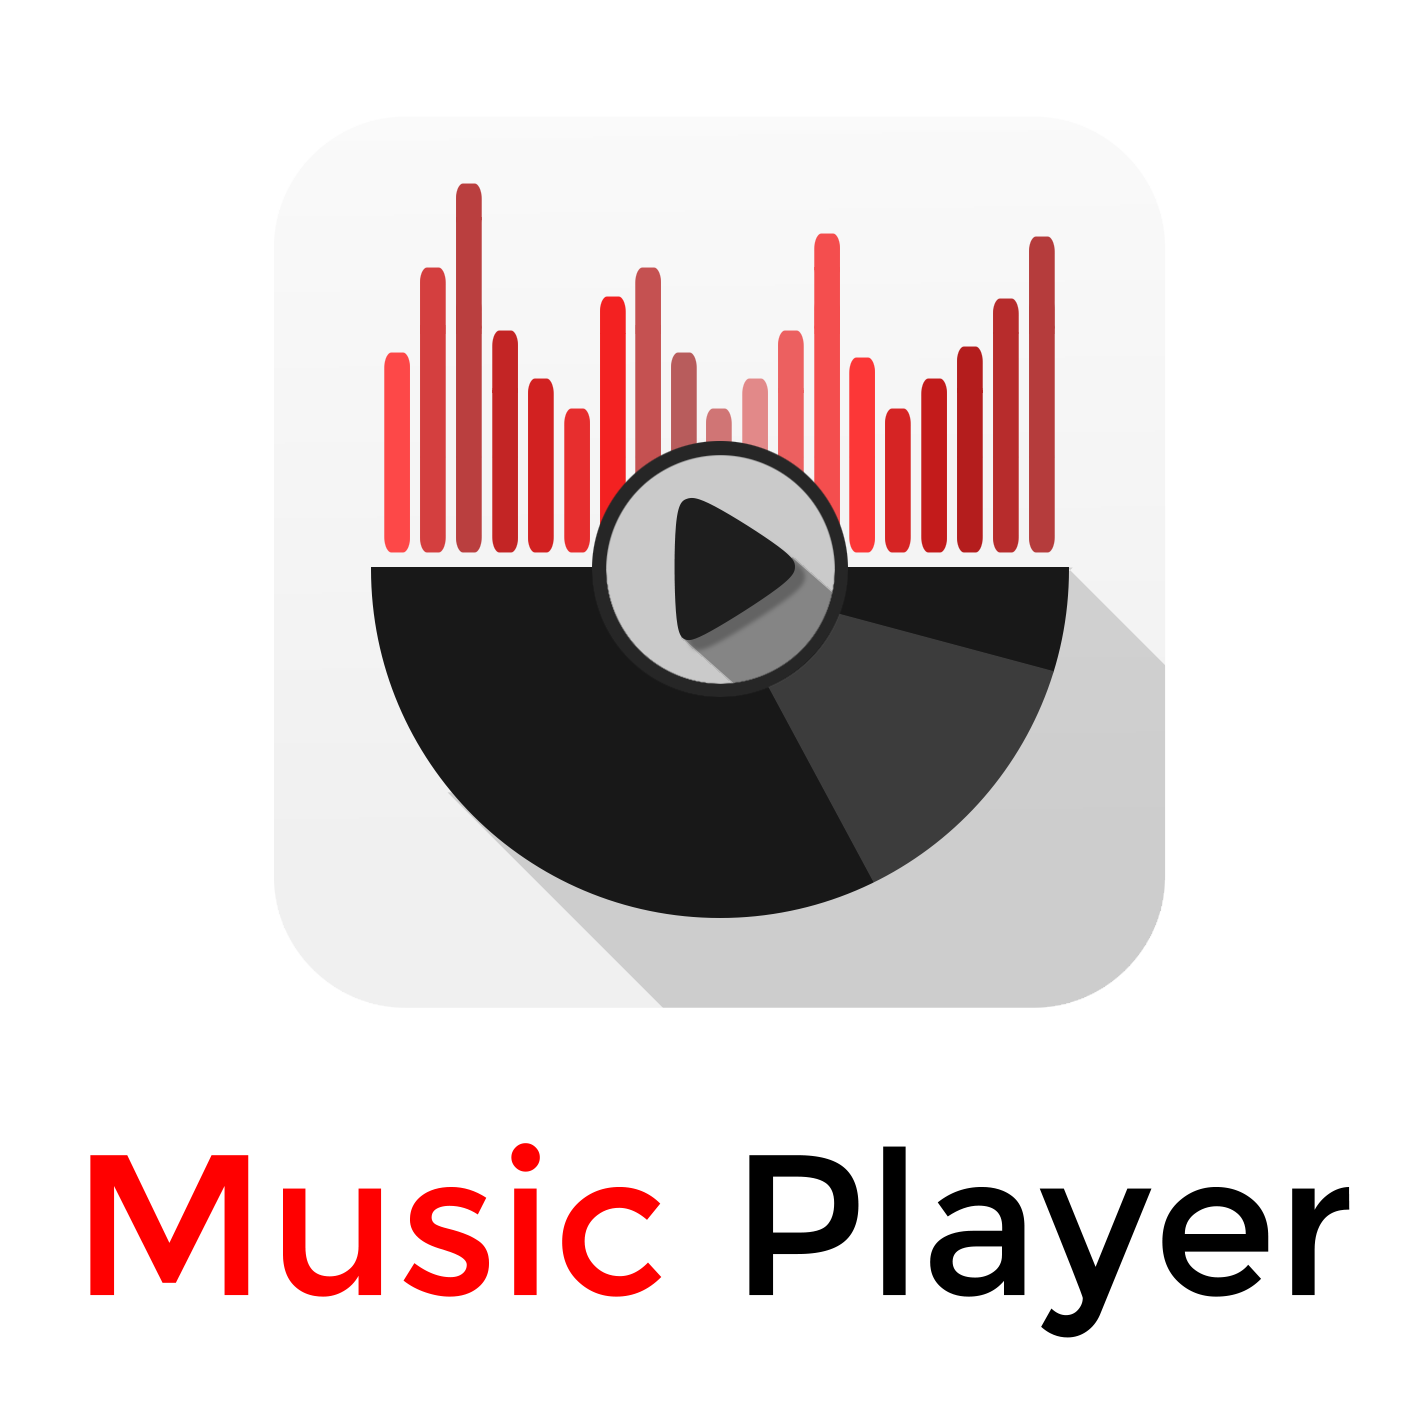 Detailing music. Music logo. Лучшие музыкальные логотипы. Логотип музыкального плеера. Ритм логотип.